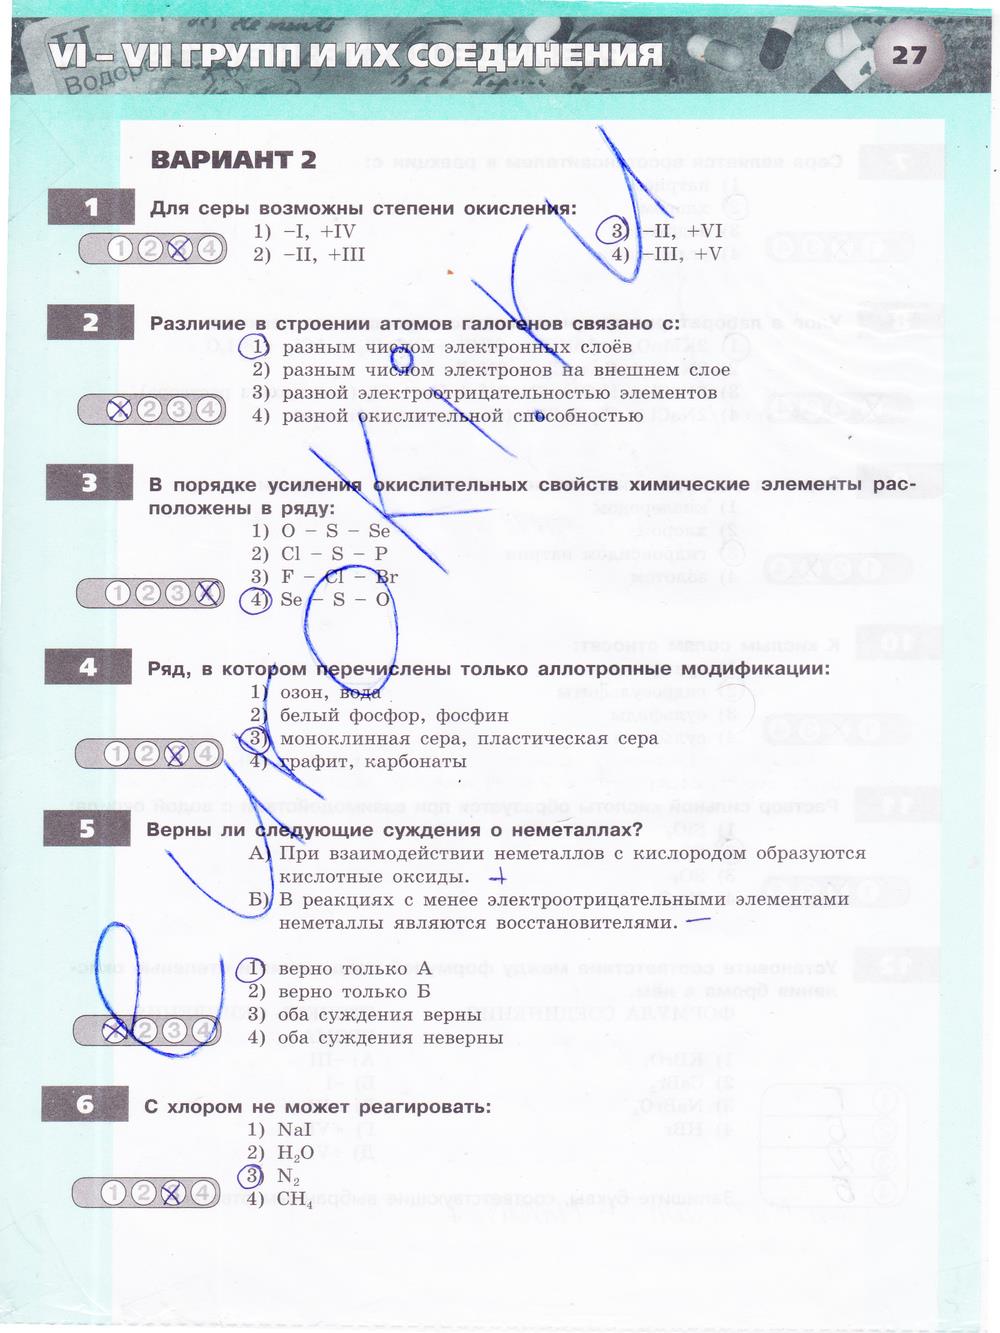 гдз 9 класс тетрадь-экзаменатор страница 27 химия Бобылева, Бирюлина